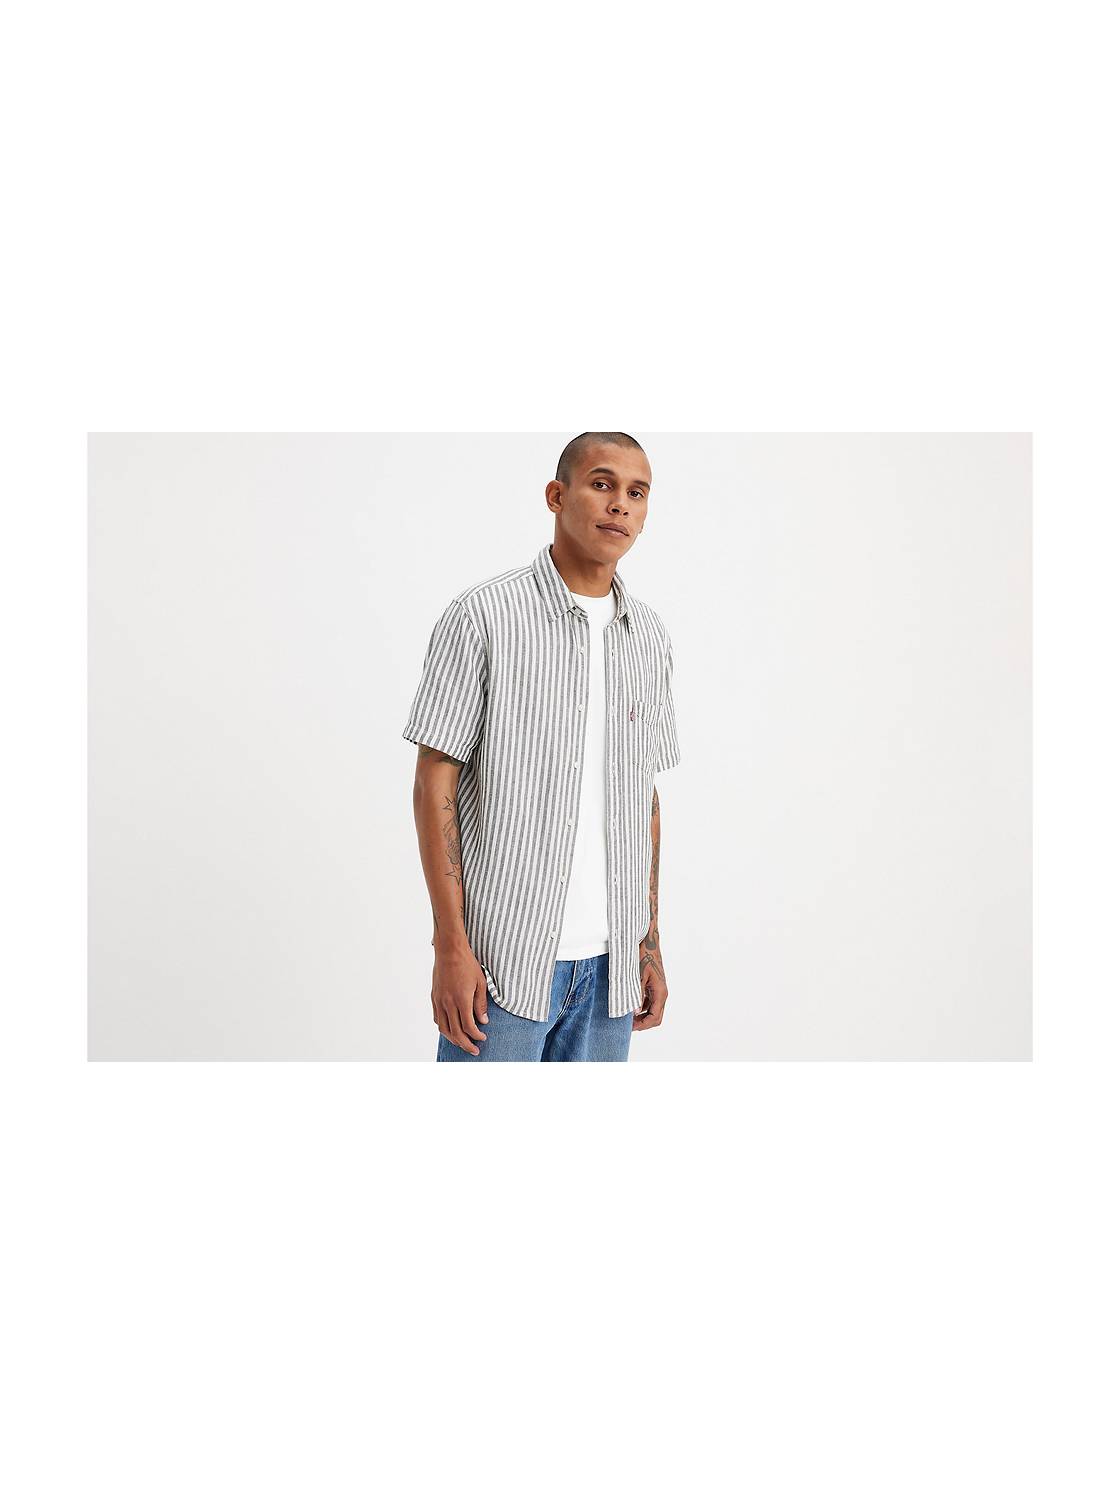 Cheap Linen Summer Shirts Men Teal Hawaiian Shirt Mens Beige Button Down  Shirt Vintage Short Sleeve Shirt White Shirt for Men Casual Lightweight  Tactical Shirt Pocket Tee Shirts Mens Big and Tall